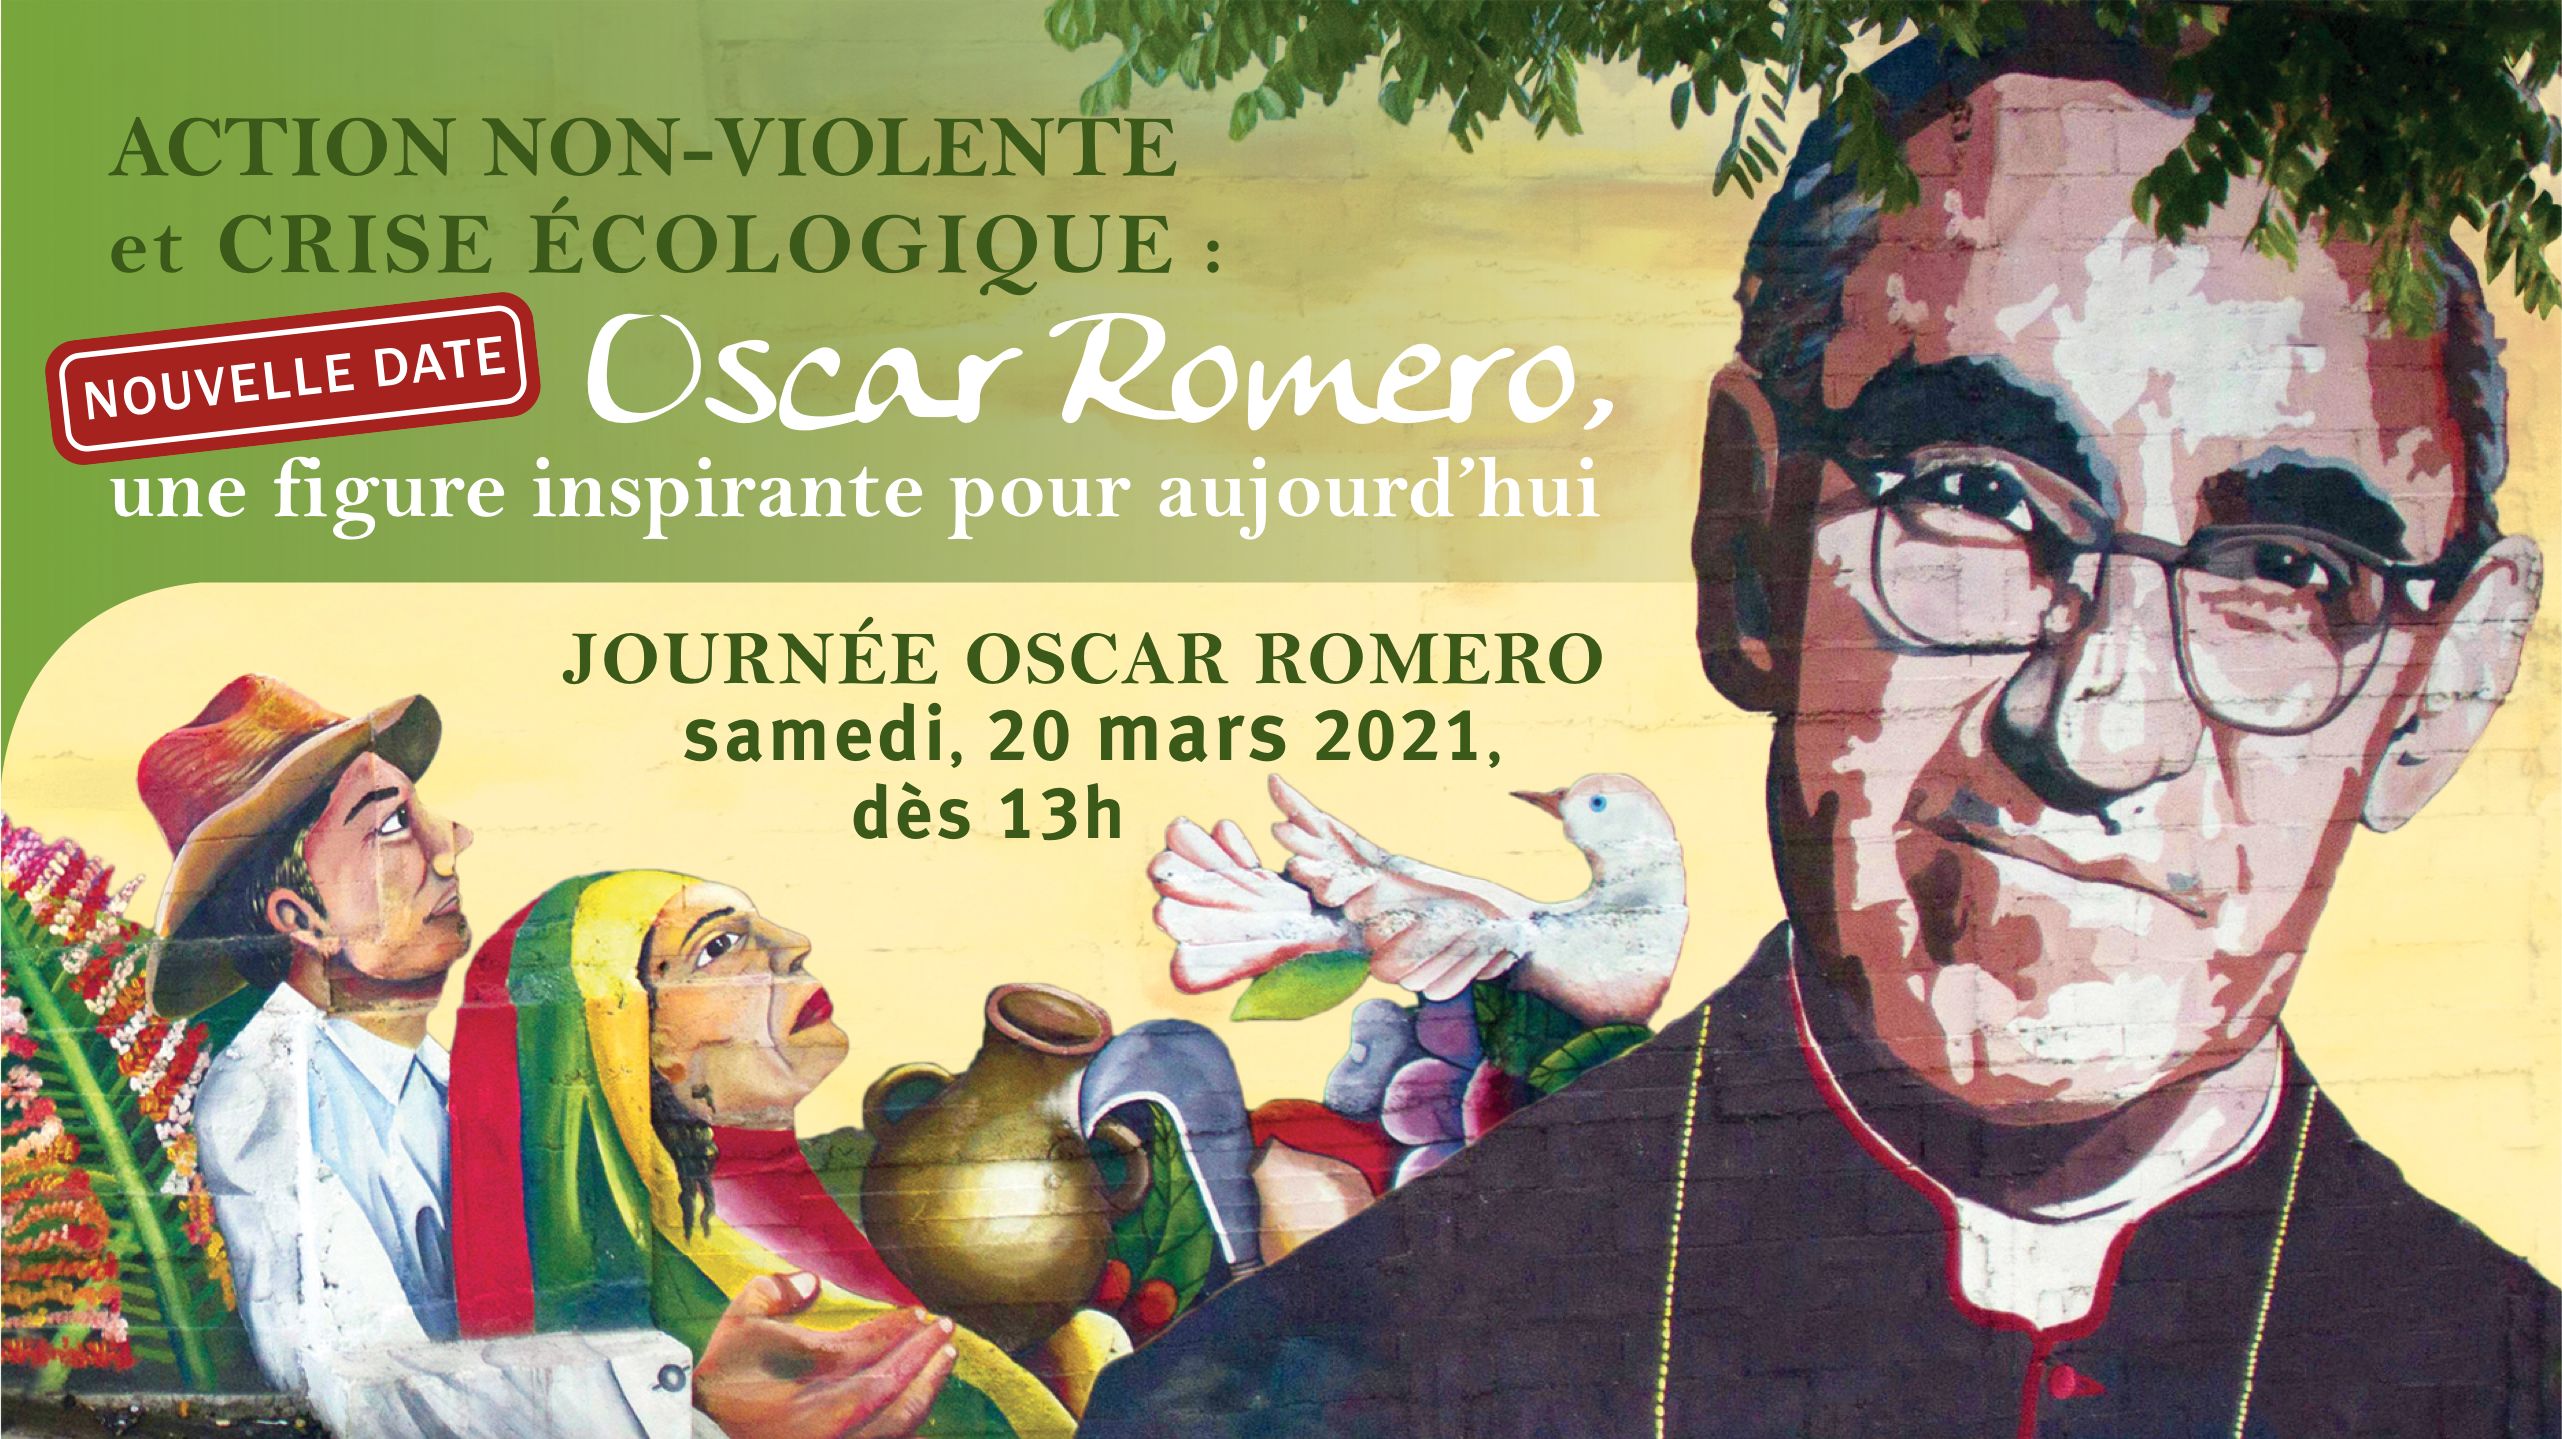 Une nouvelle date annoncée pour la Journée Oscar Romero